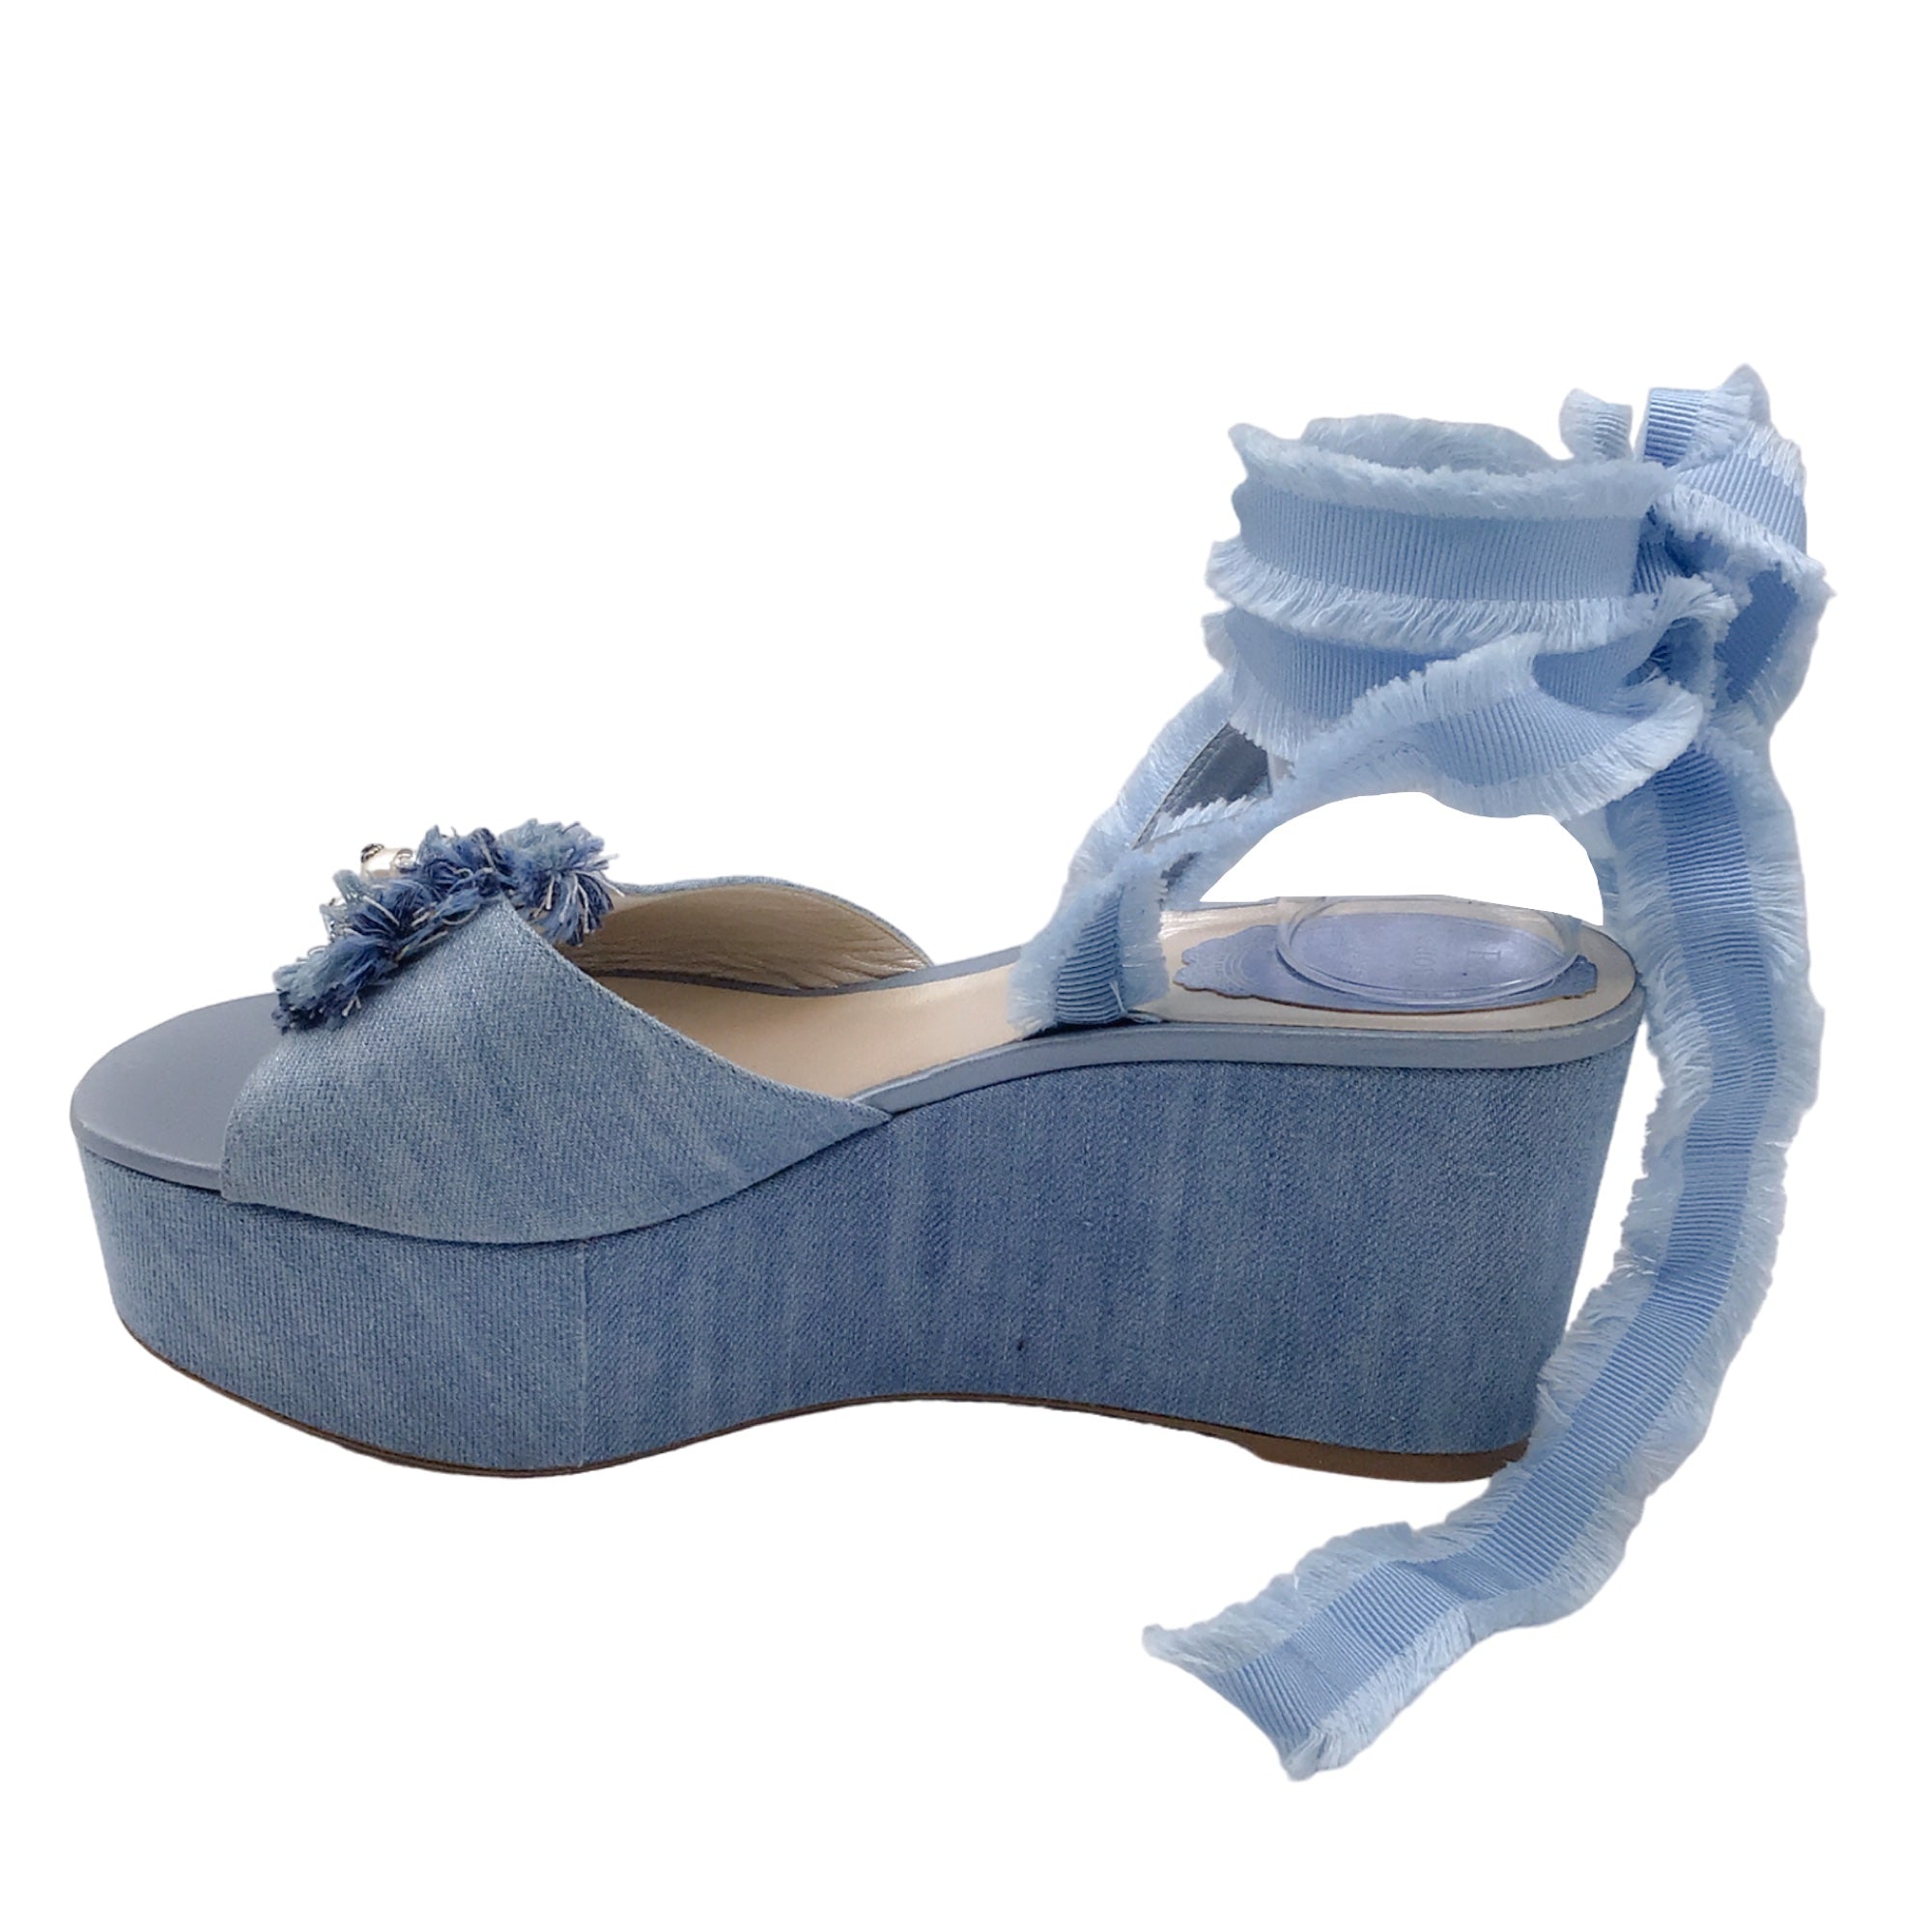 Rene Caovilla Blue Embellished Denim Ankle Wrap Platform Sandals